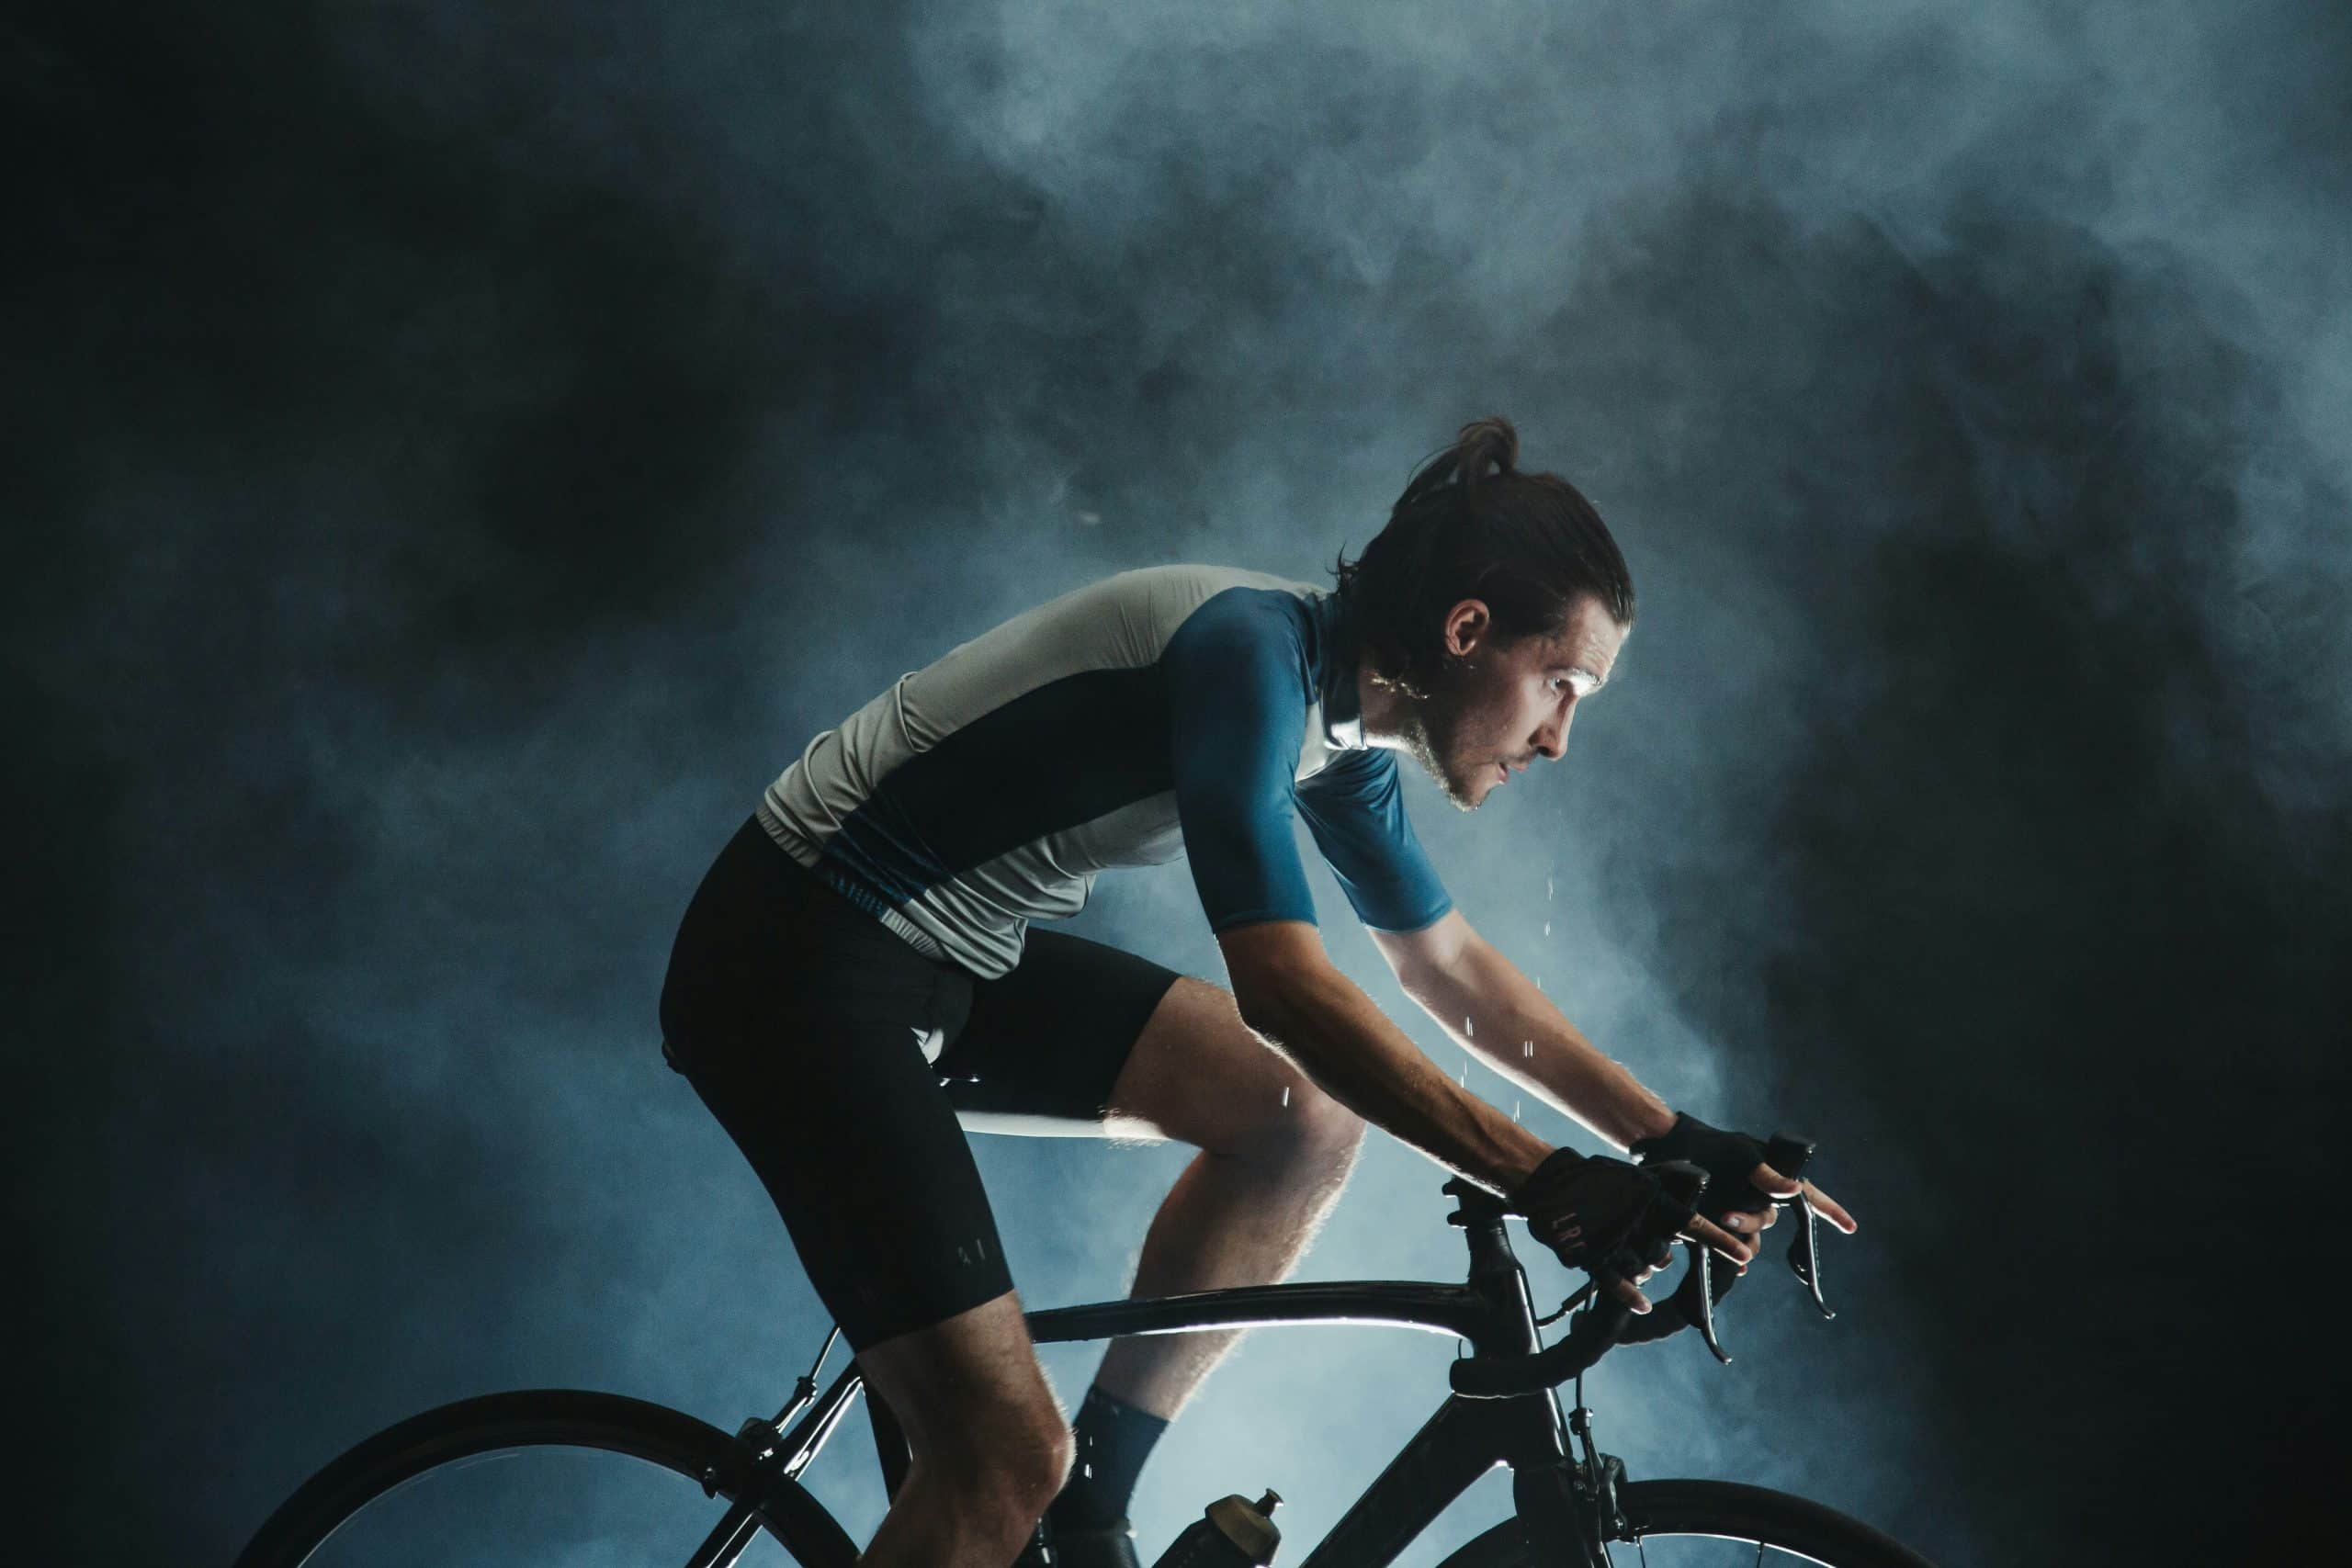 découvrez toute l'actualité du cyclisme, des conseils d'entraînement, des tests de matériel et bien plus encore sur le cyclisme.